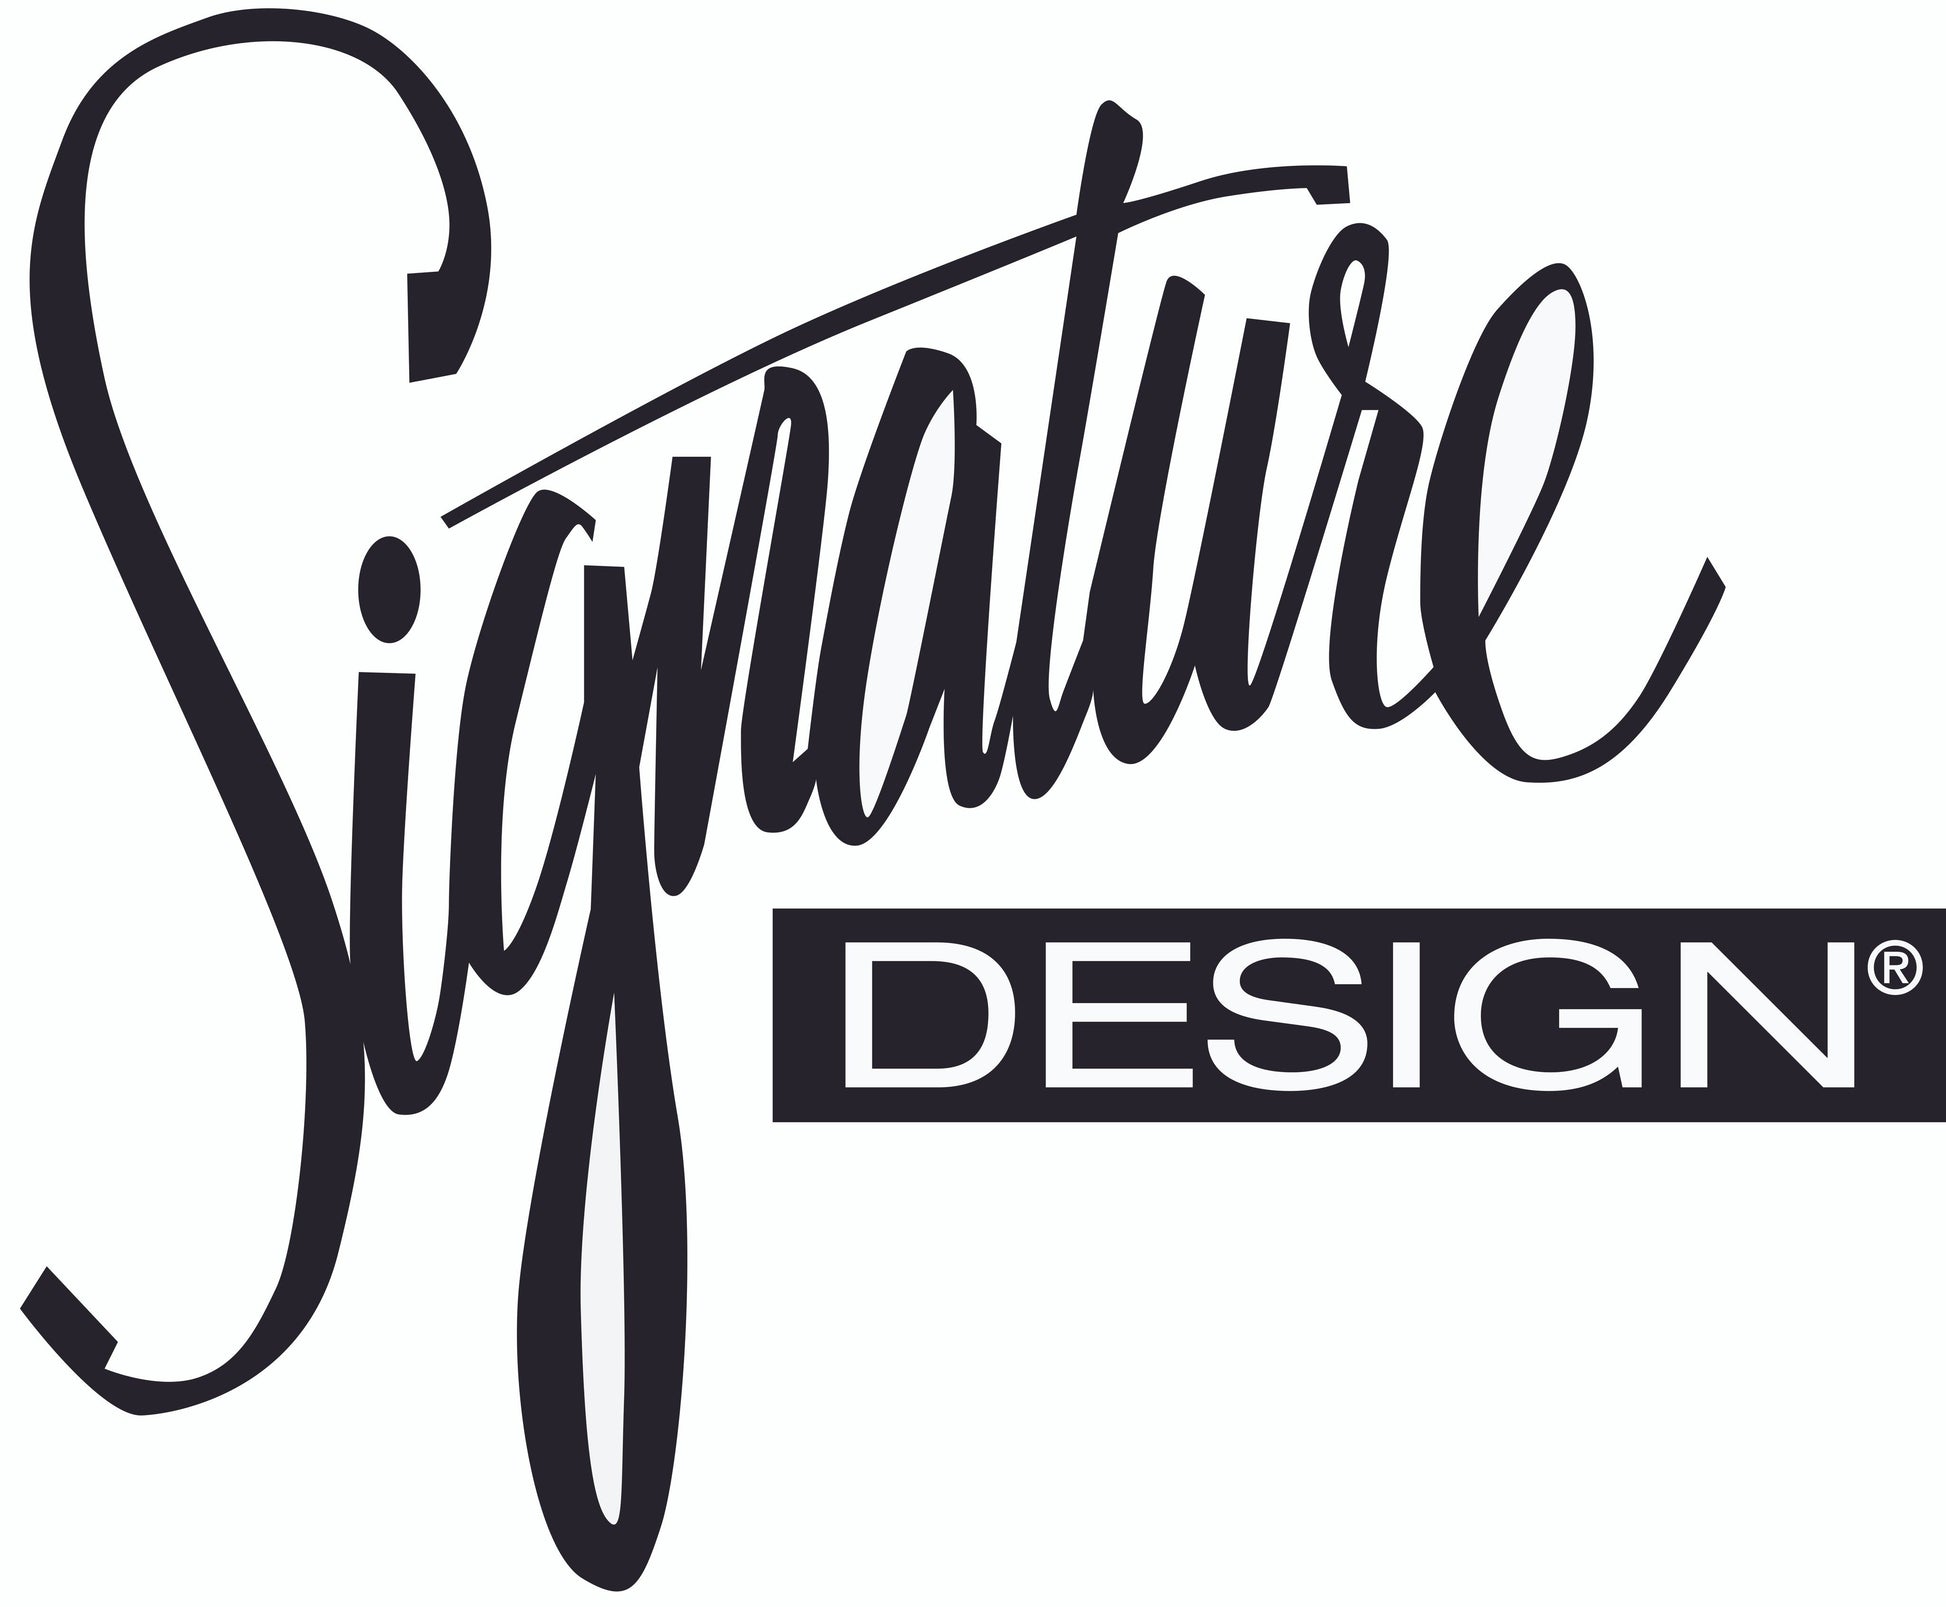 Latricia Pouf Signature Design by Ashley®